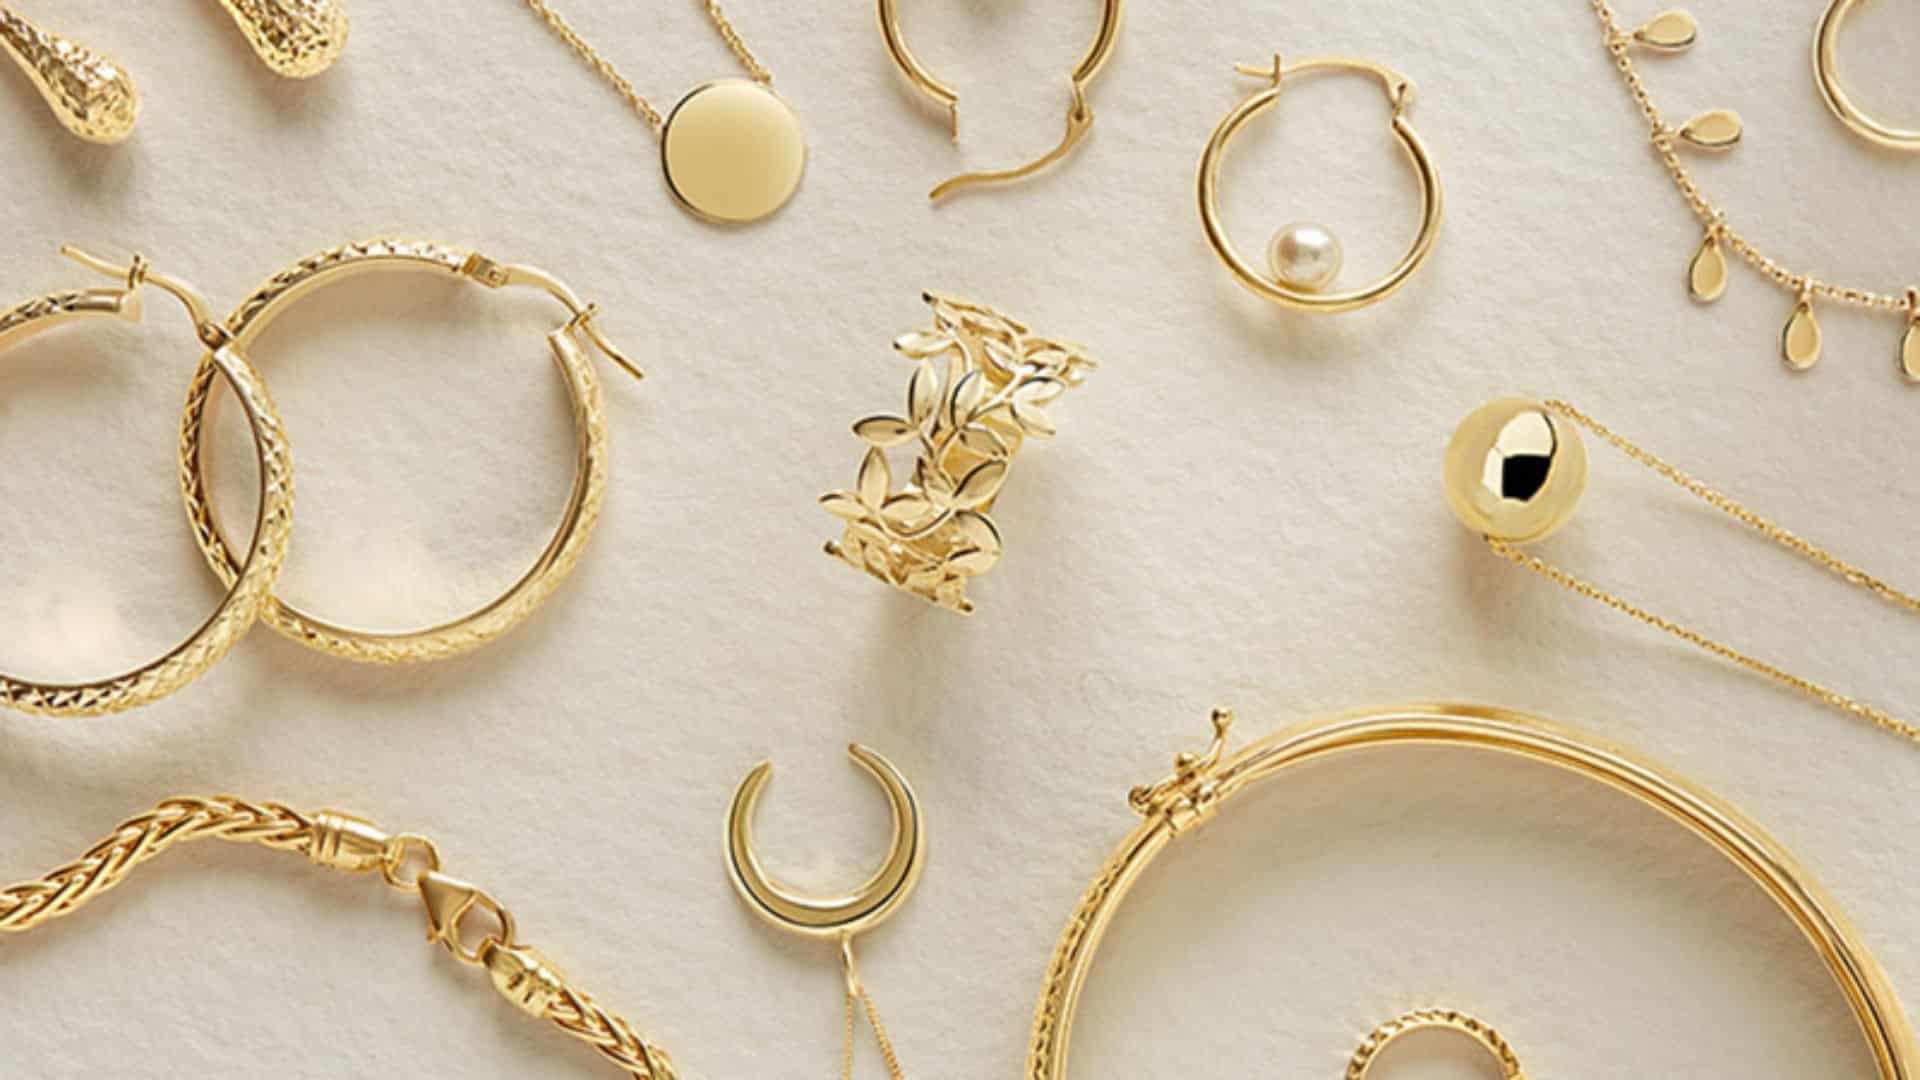 Ngọc Thịnh Jewelry - Cửa hàng bán trang sức nổi tiếng